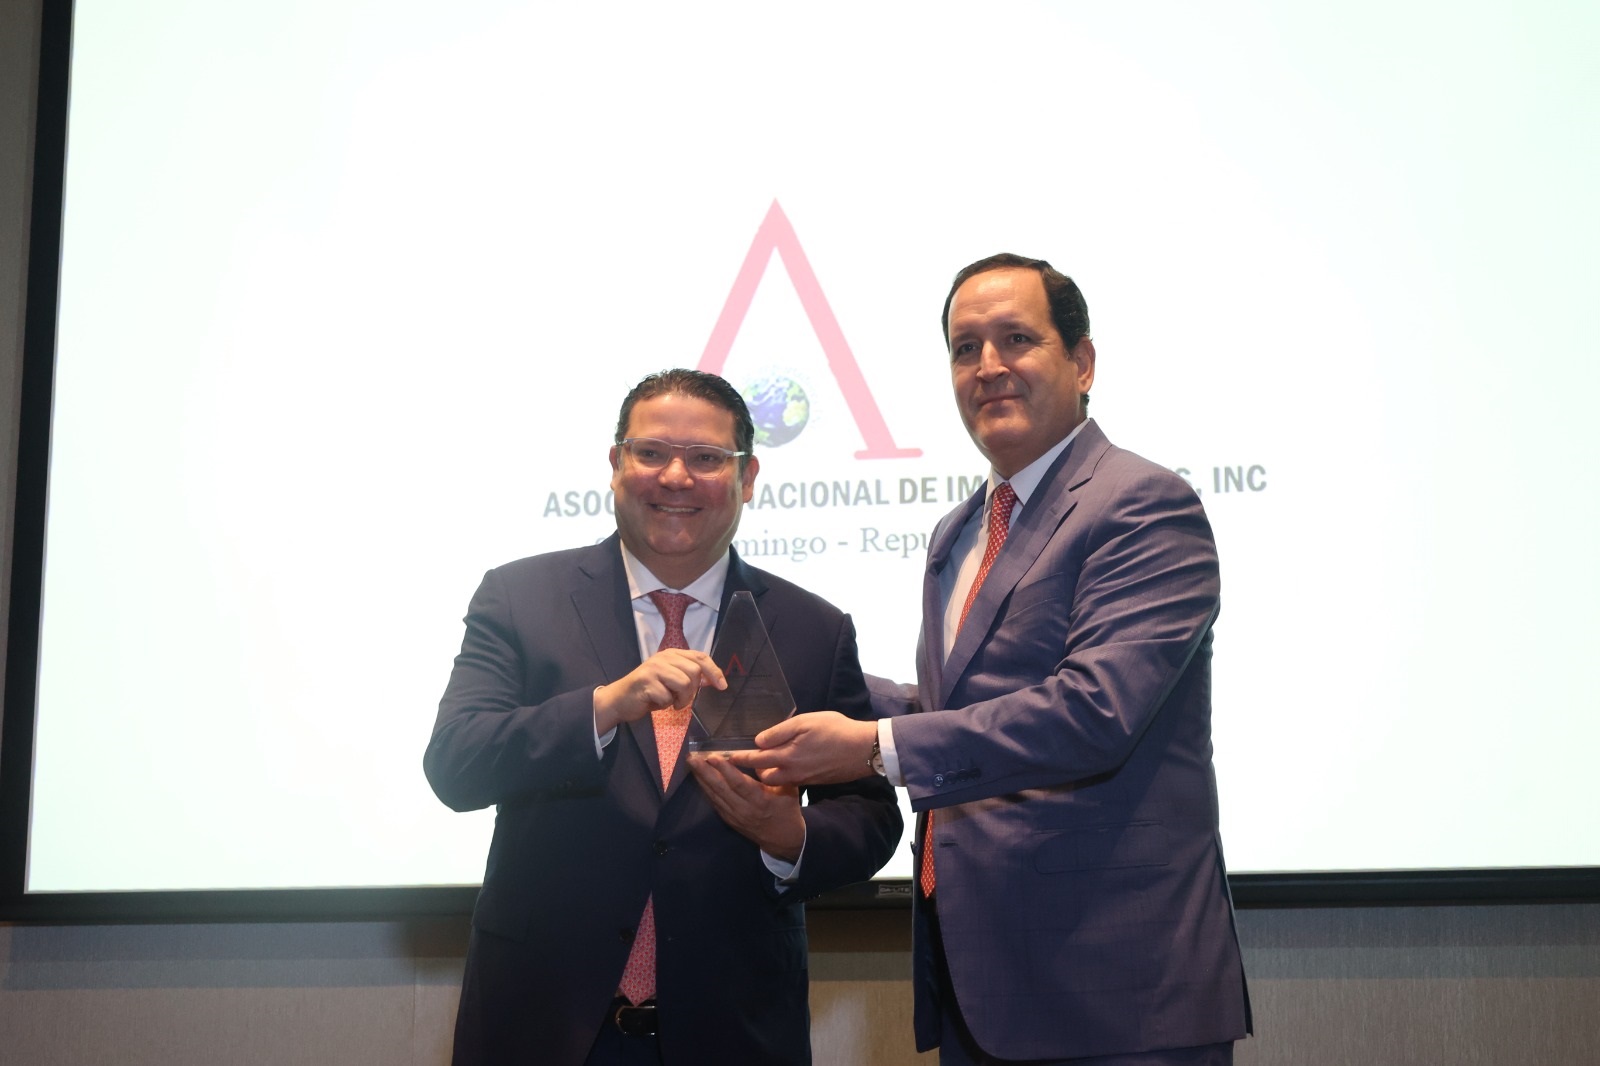 Asociación de Importadores reconoce avances realizados en Aduanas durante gestión de Sanz Lovatón